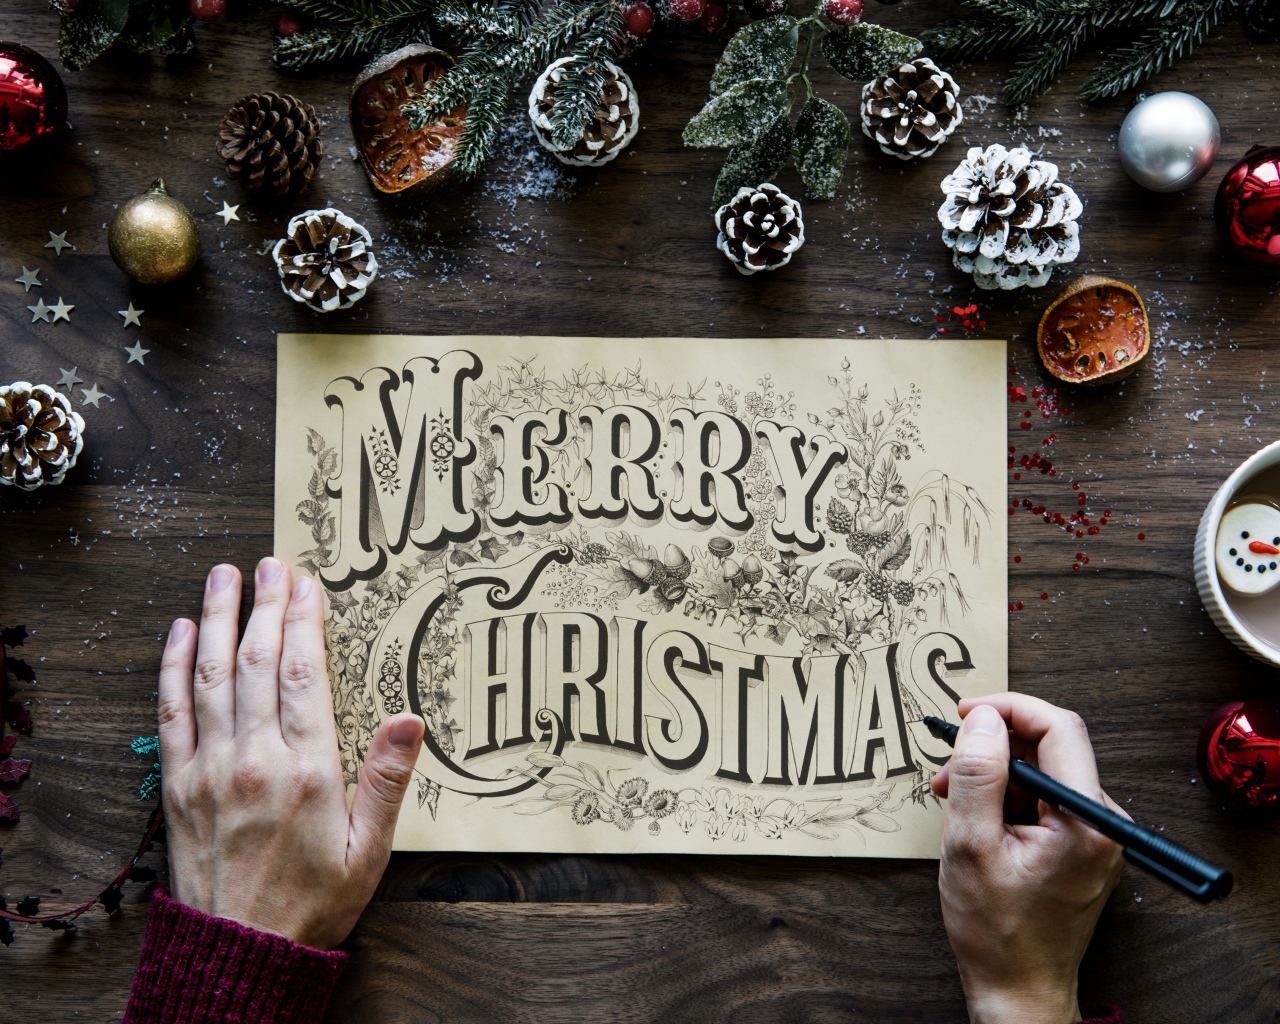 Рисунок с надписью Merry Christmas на столе с новогодними украшениями